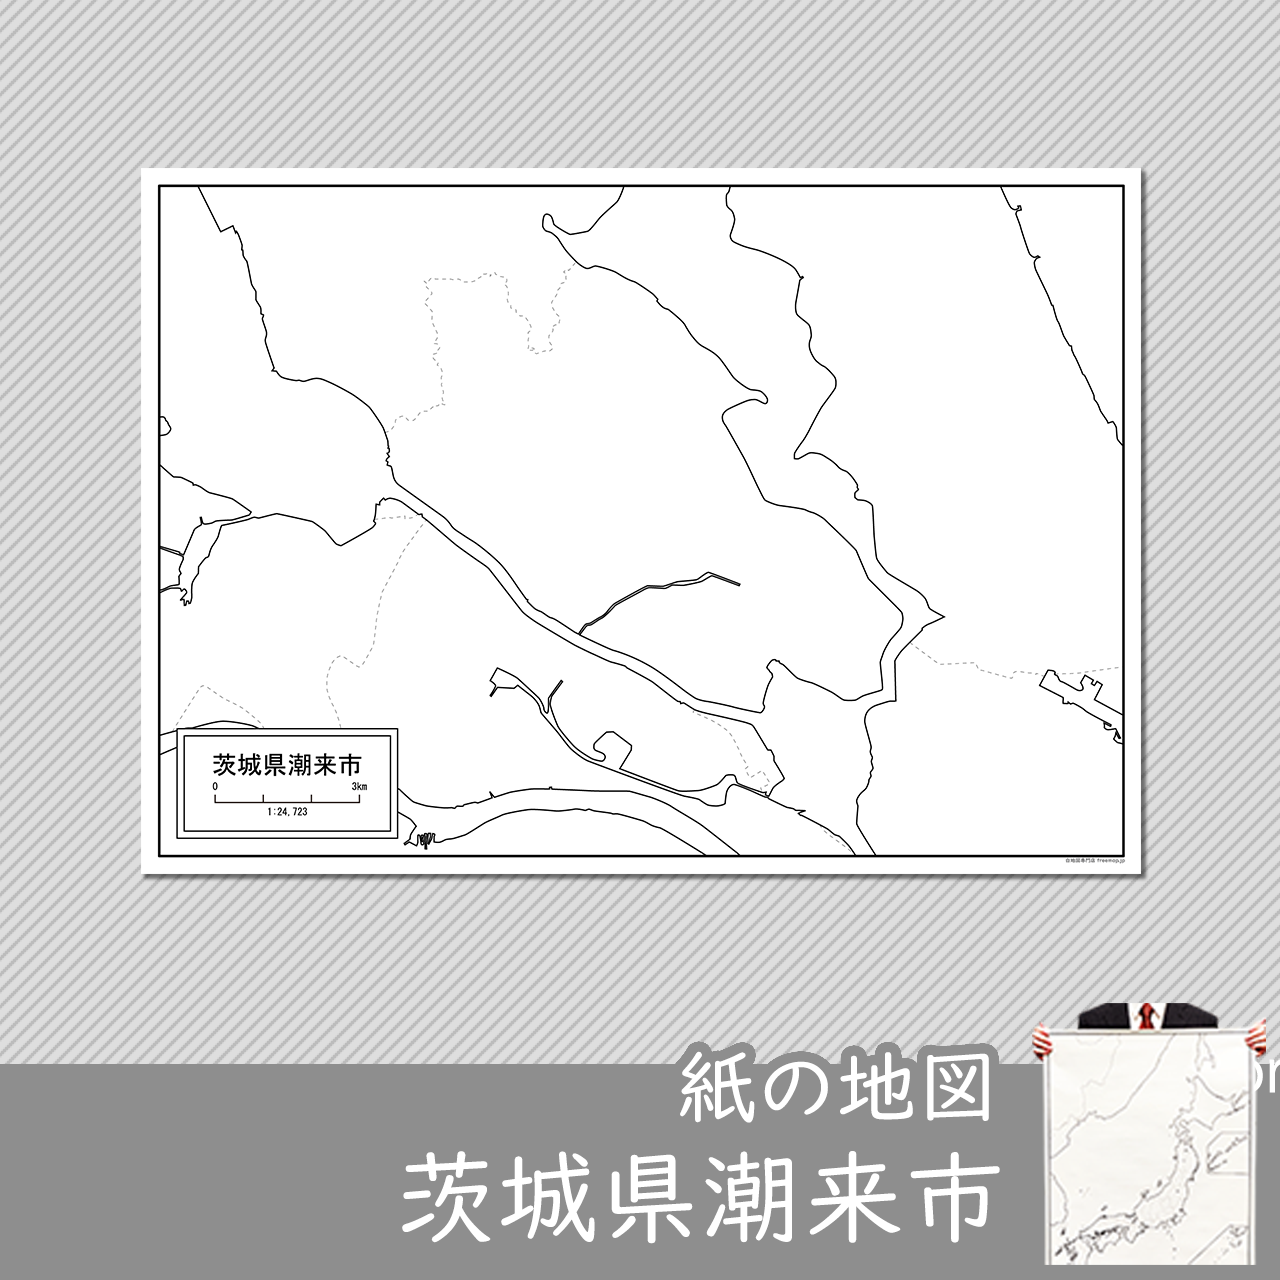 潮来市の紙の白地図